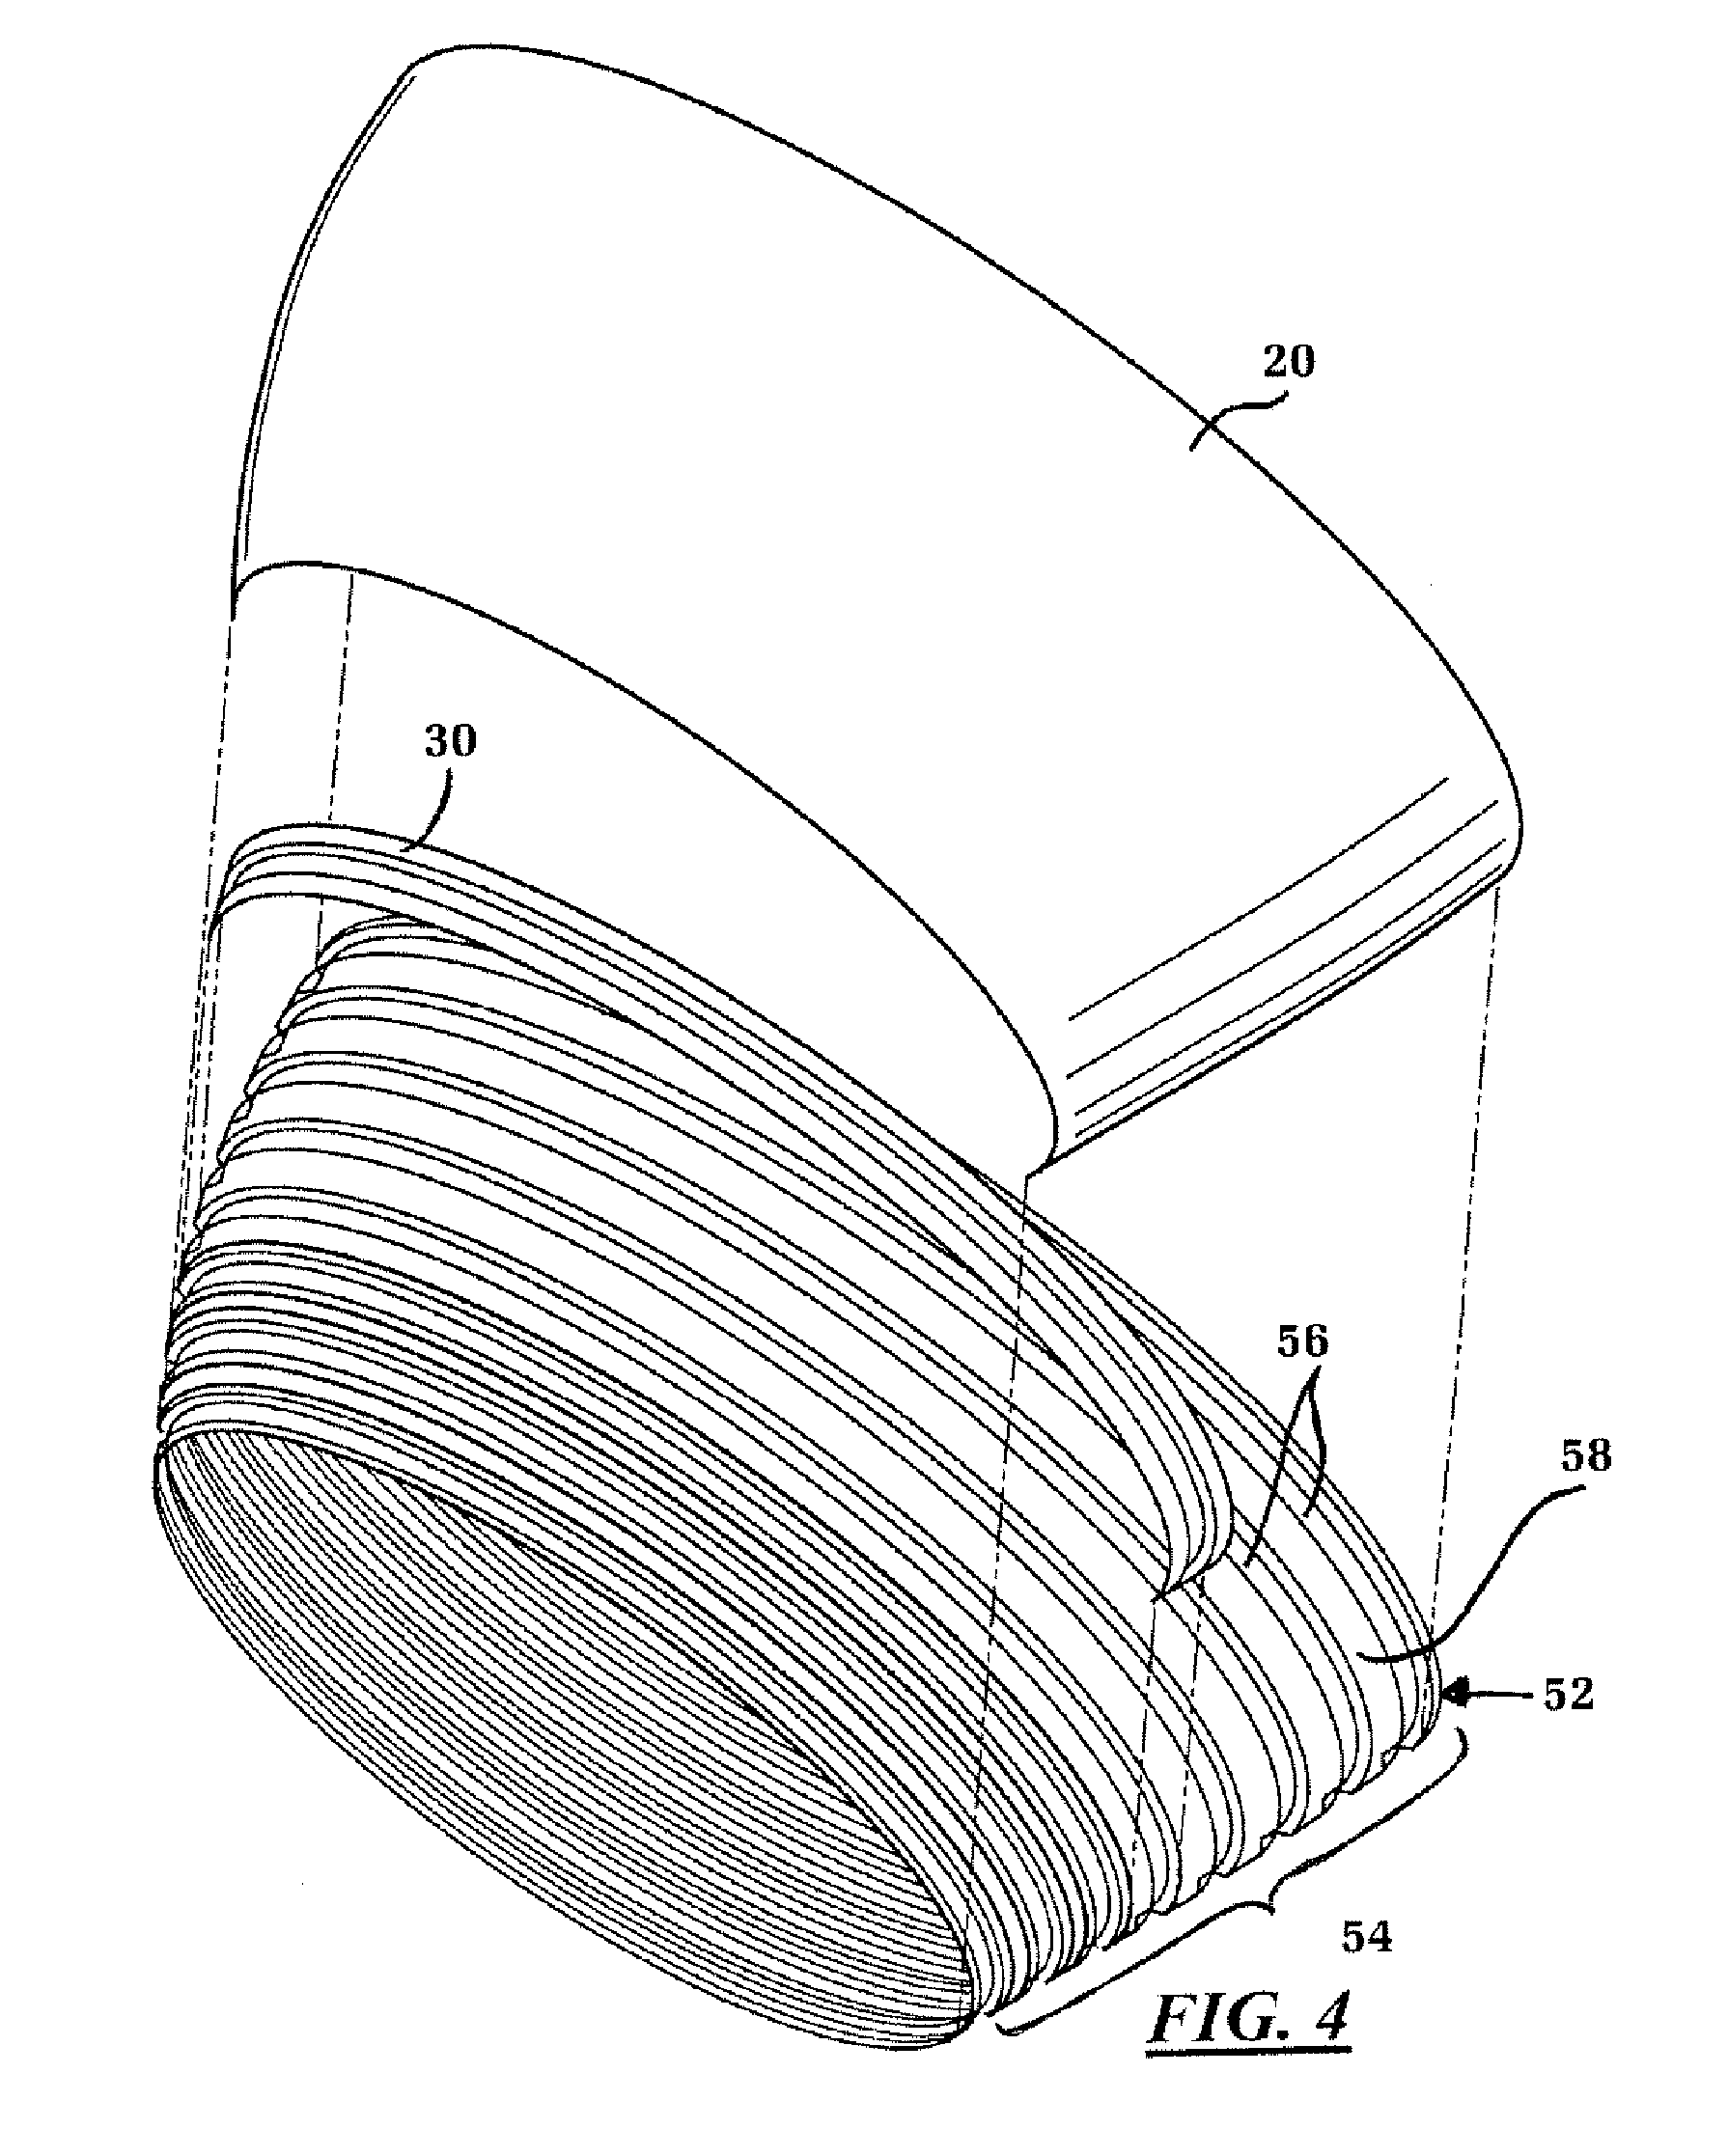 Single piece fuselage barrel